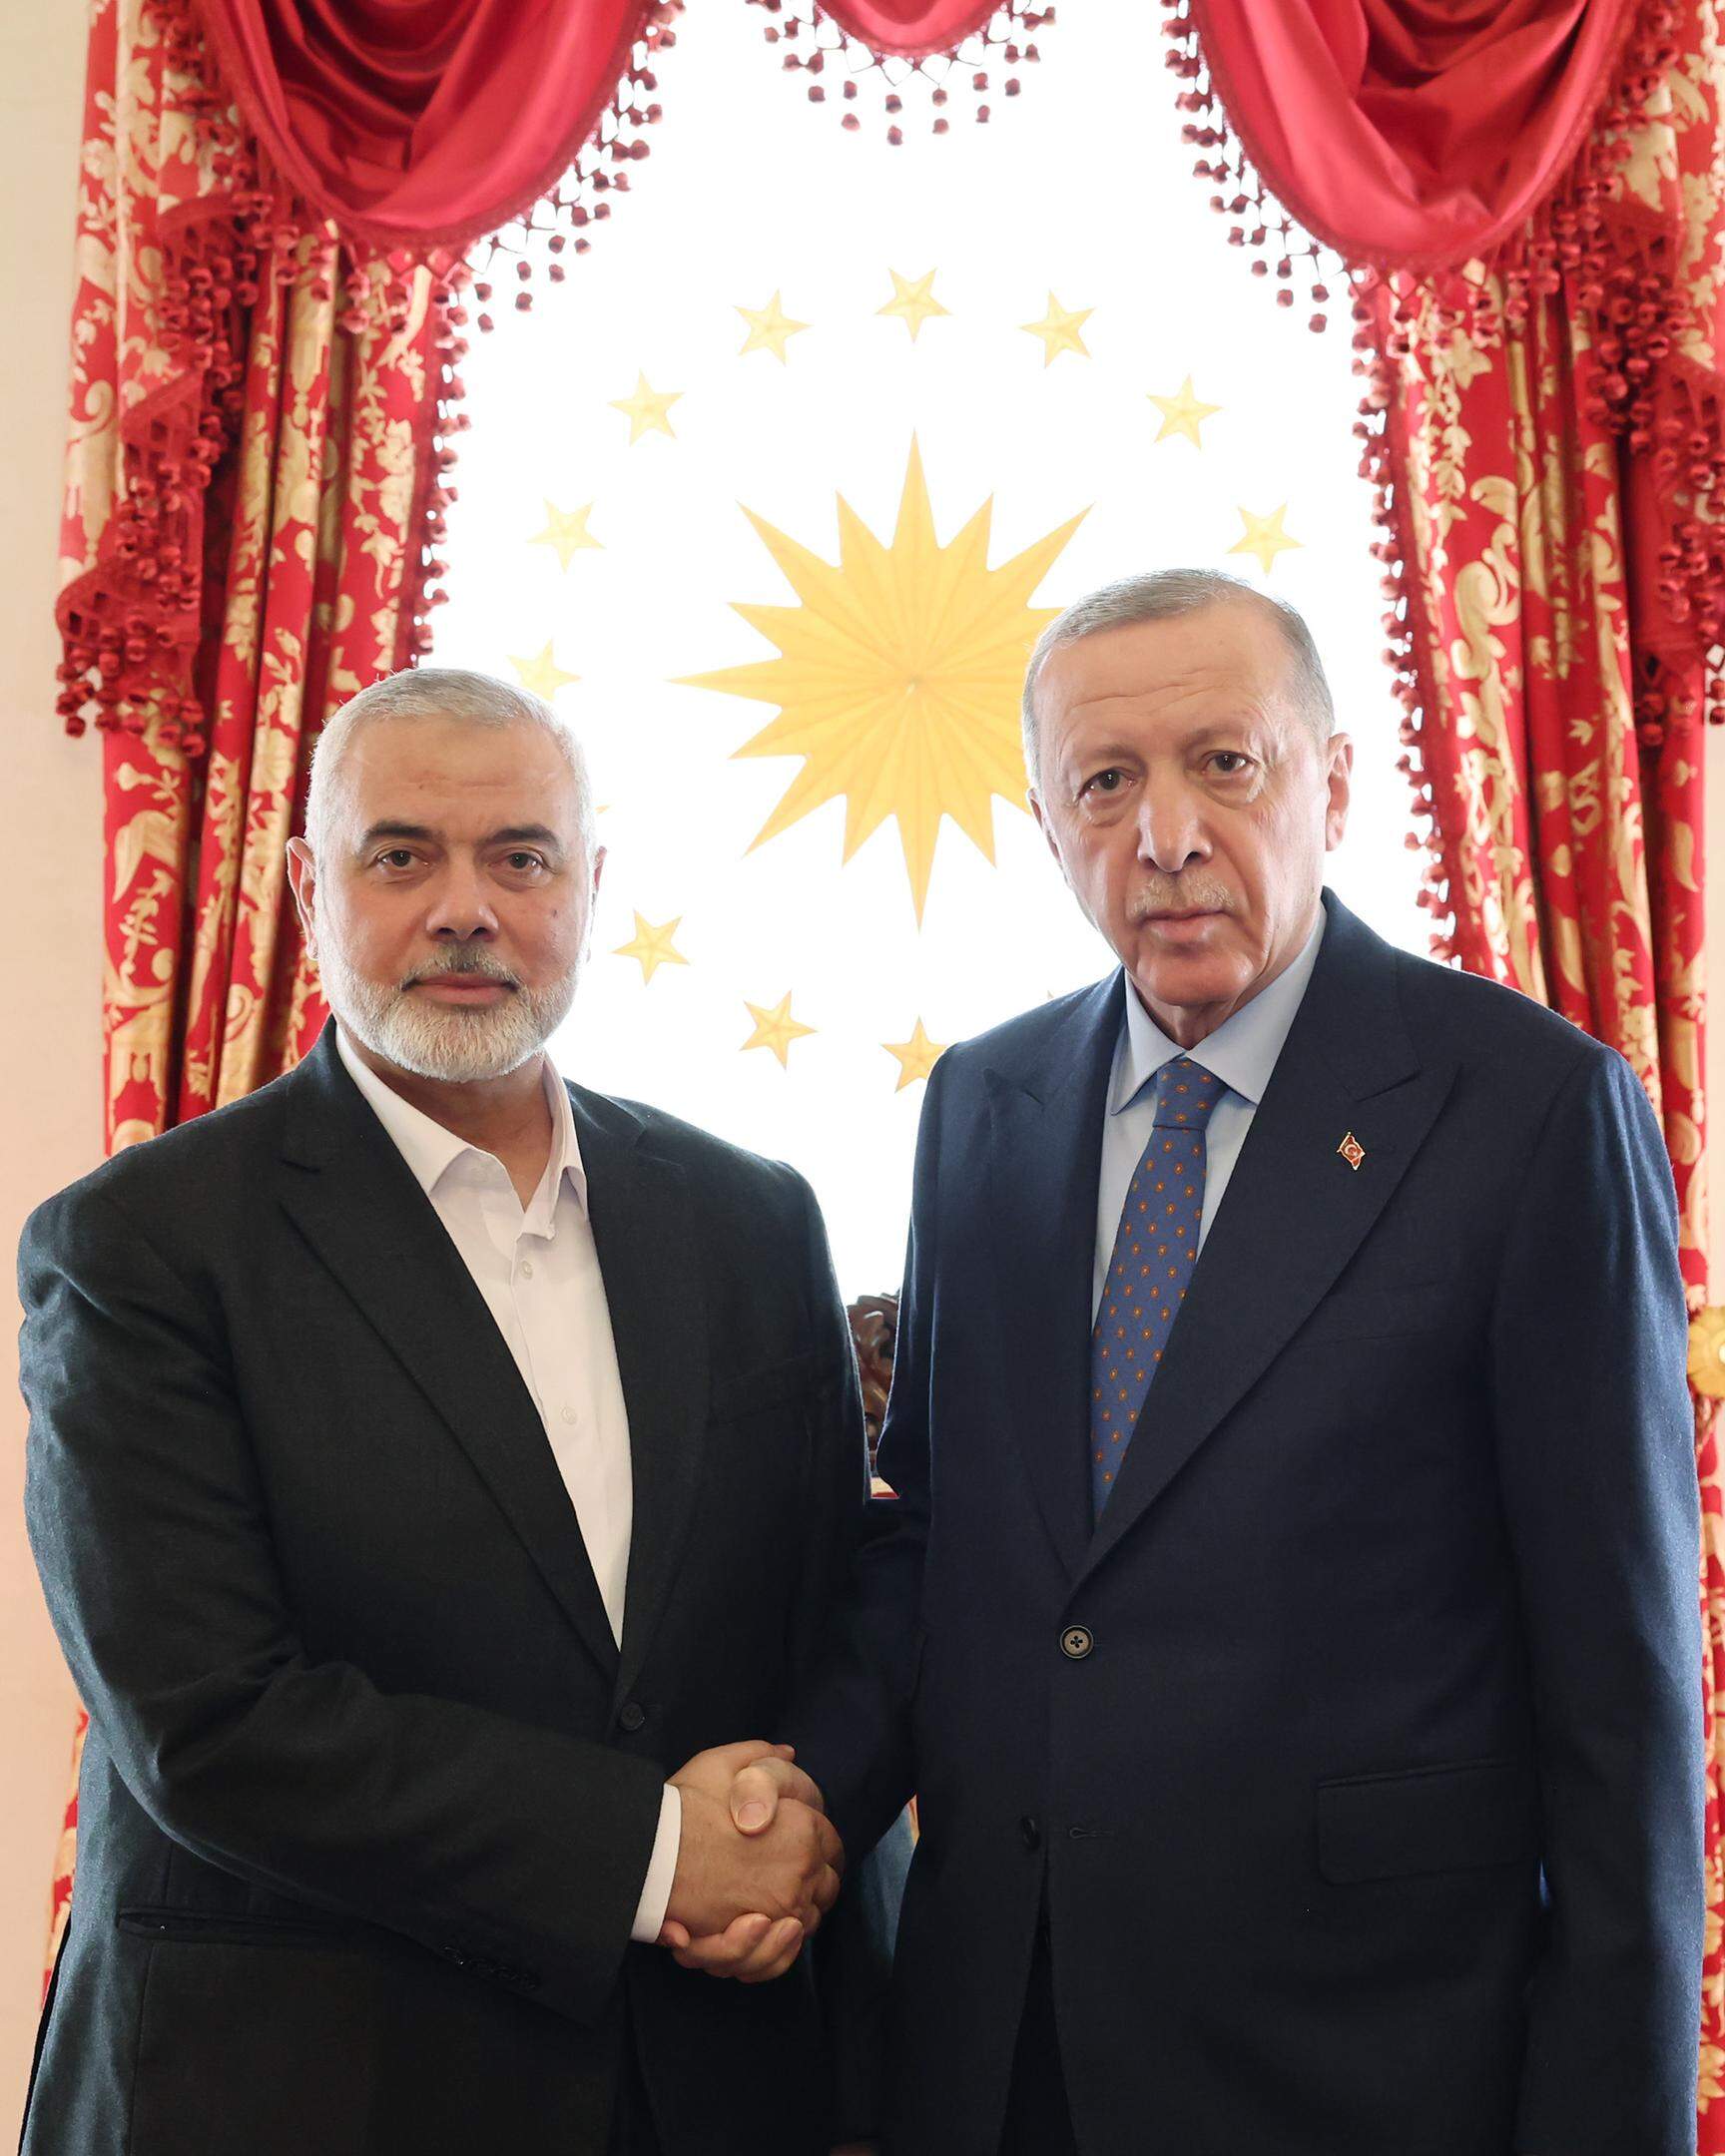 Dass die Türkei sich der Klage gegen Israel anschließen würde, verwundert Beobachter nicht. Erst im April empfing Erdogan Hamas-Anführer Ismail Haniyeh in seinem Präsidentenpalast in Ankara.